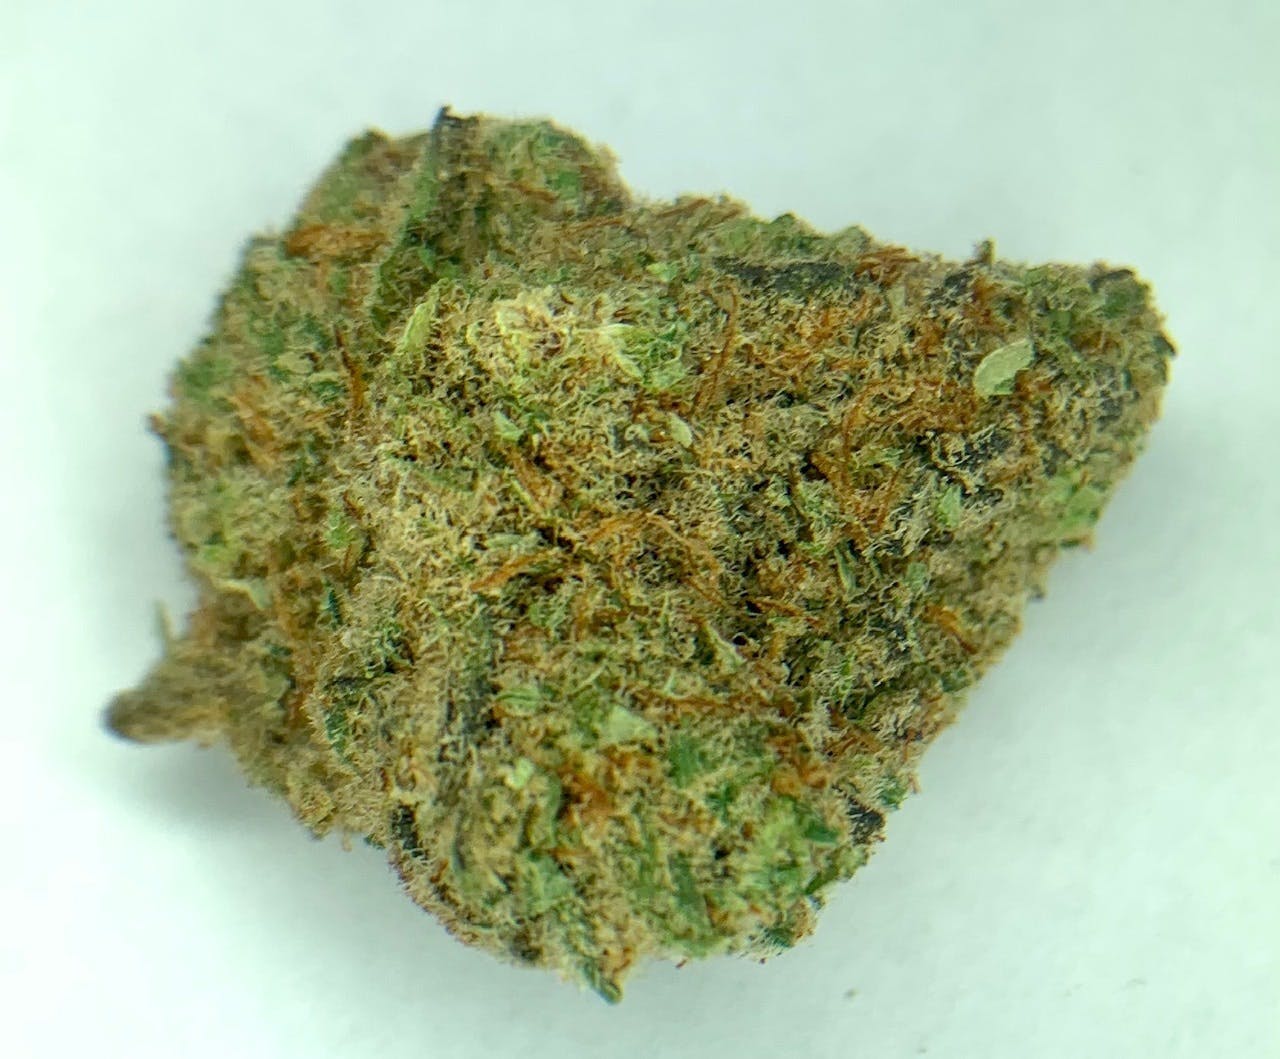 marijuana-dispensaries-549-n-western-ave-los-angeles-exclusive-slimer